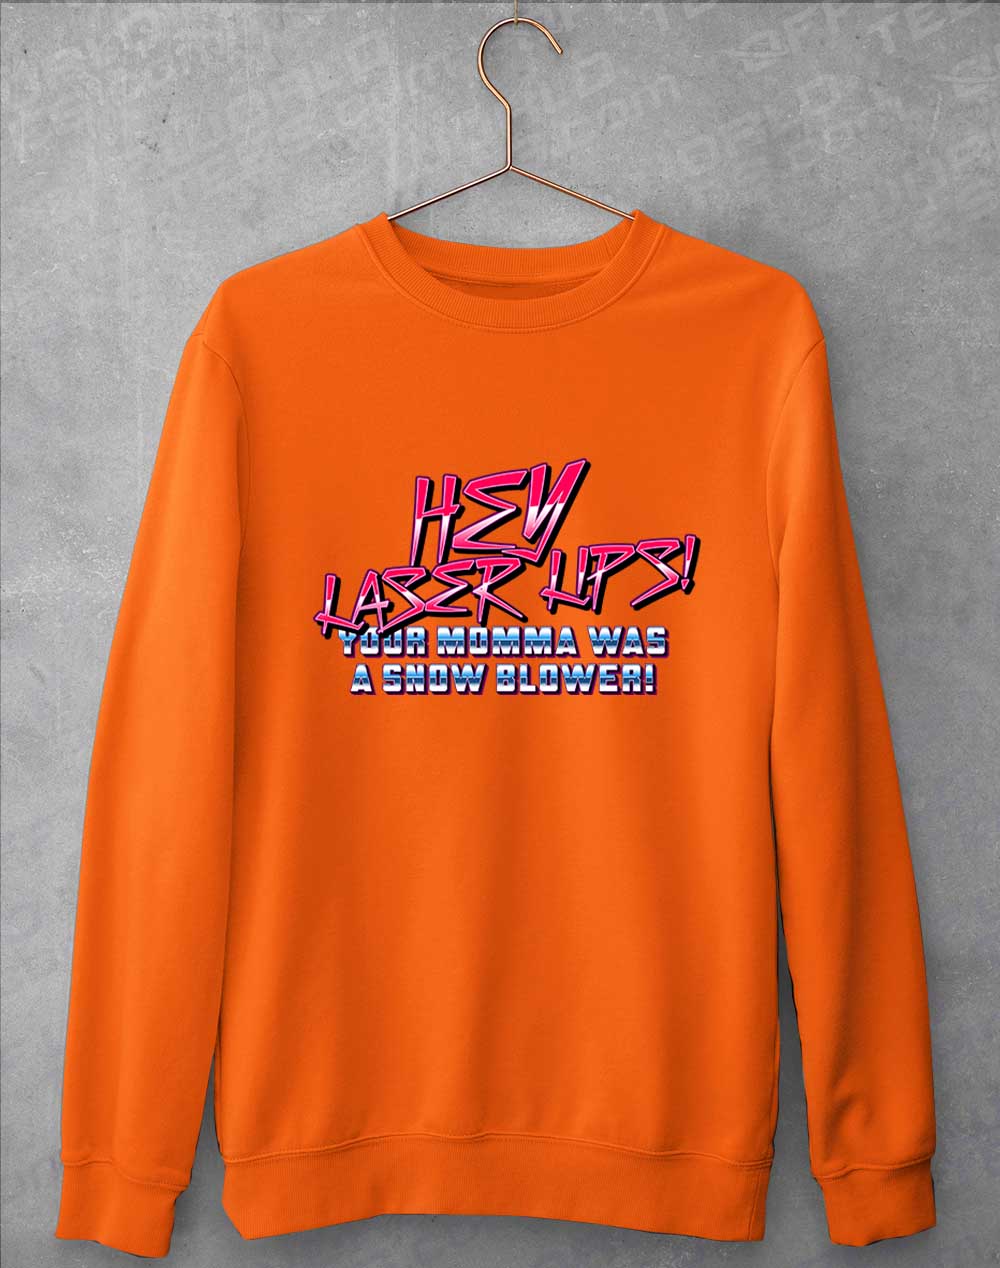 Orange Crush - Hey Laser Lips Sweatshirt